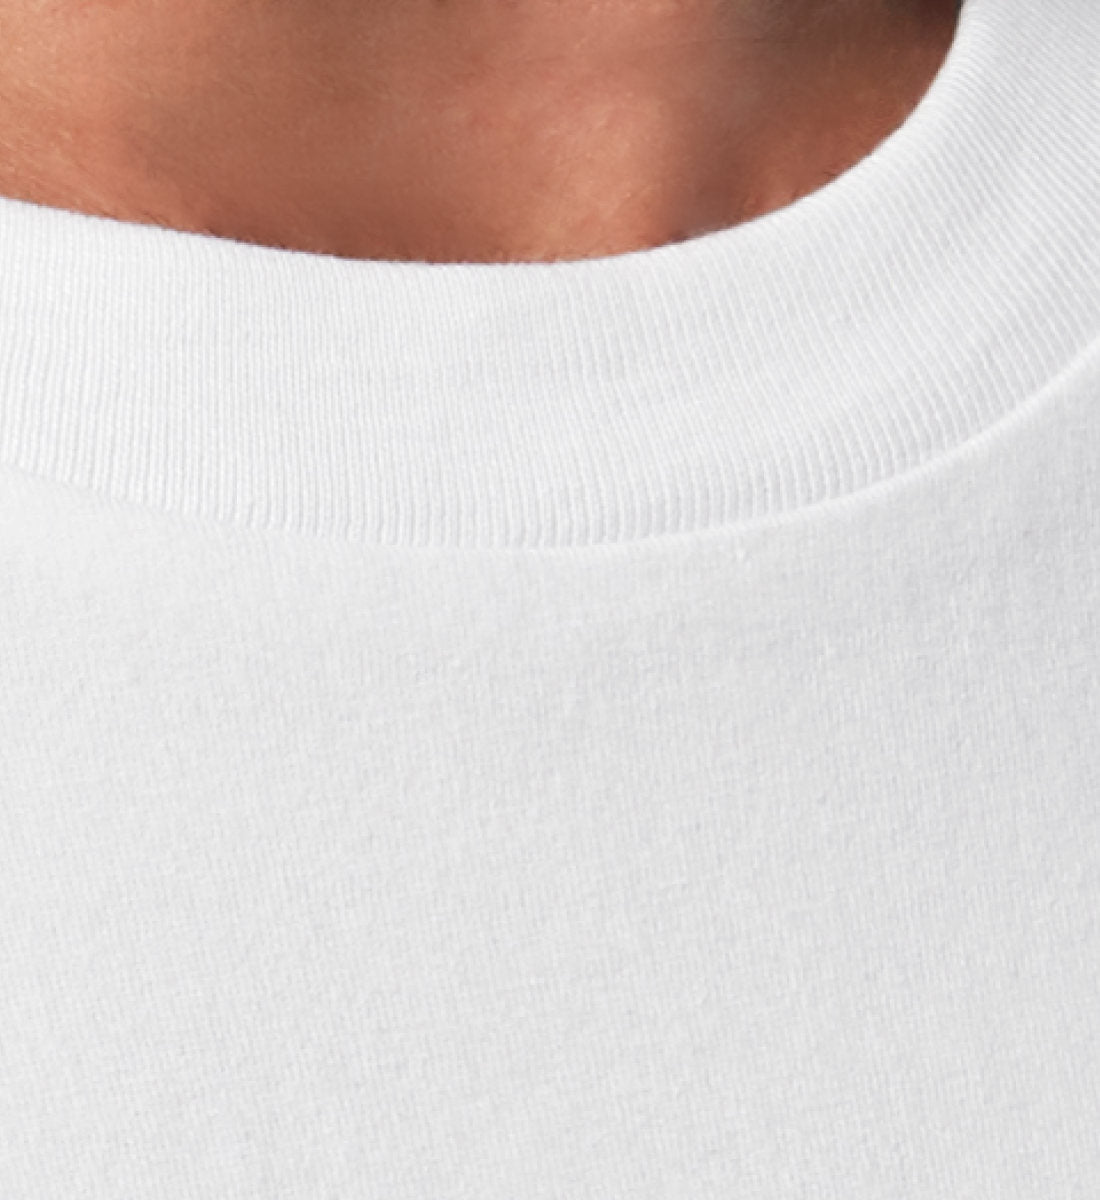 Weißes T-Shirt Unisex Relaxed Fit für Frauen und Männer bedruckt mit dem Design der Roger Rockawoo Kollektion and then yoga along